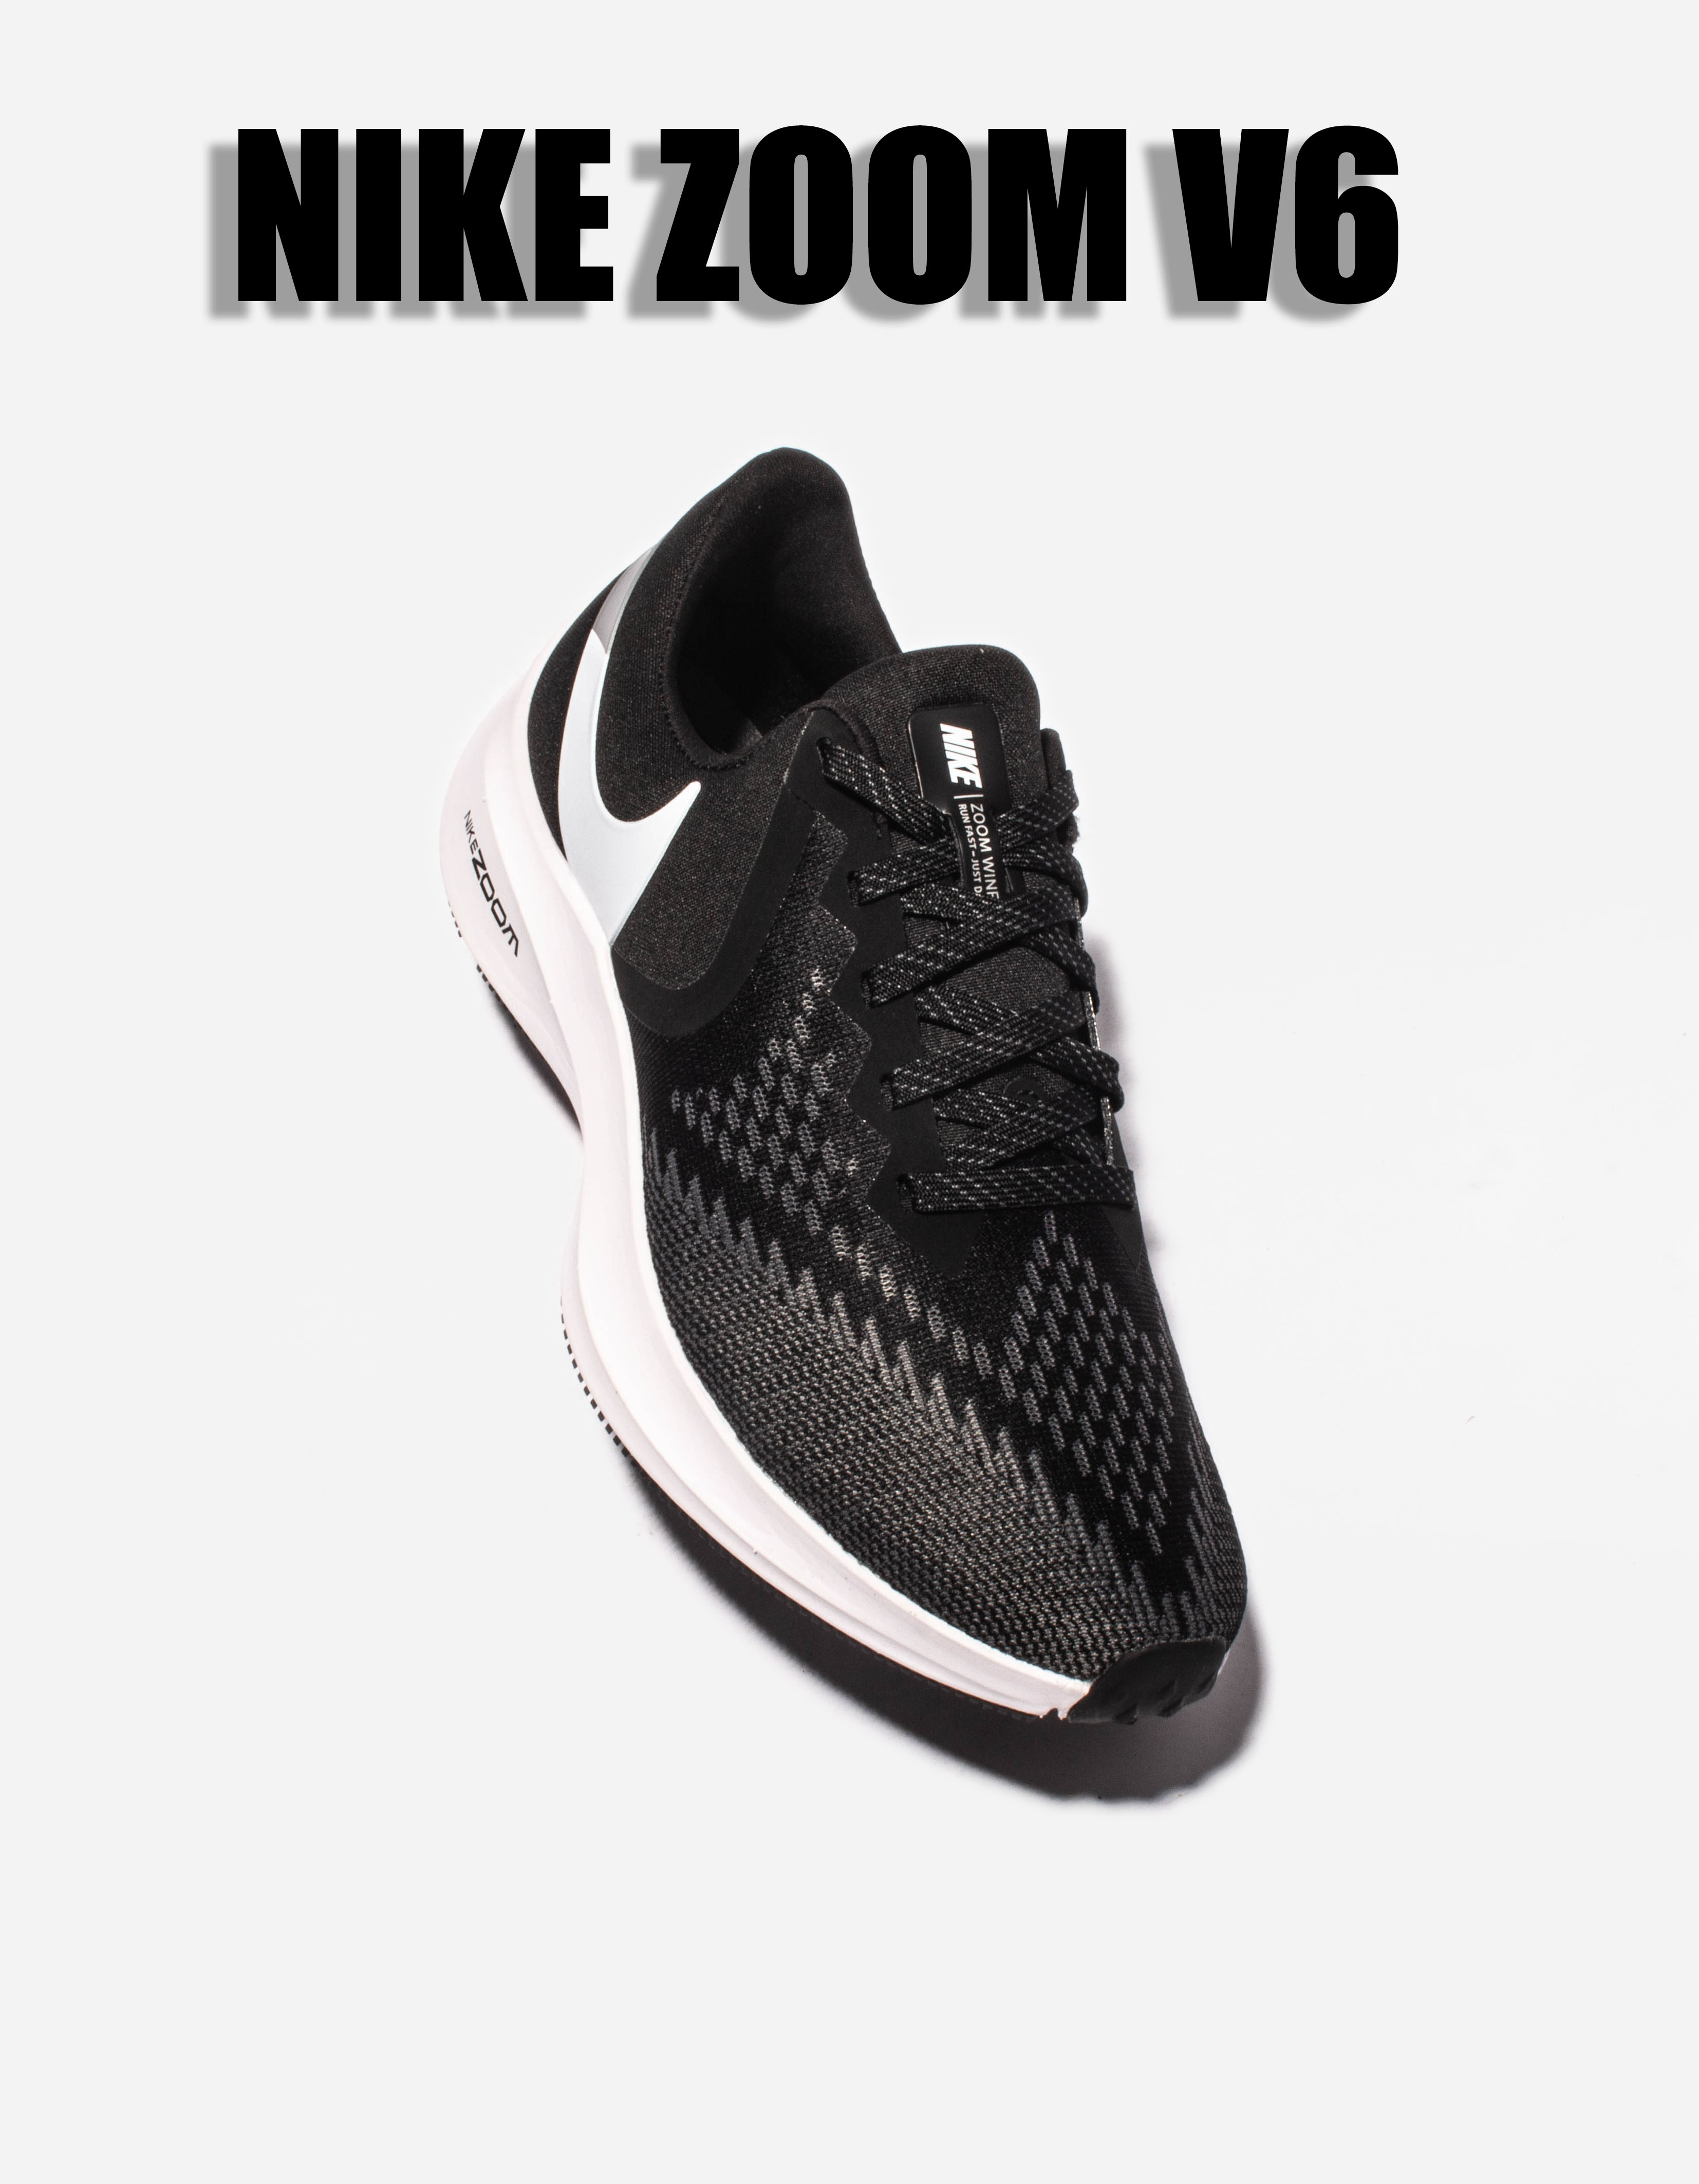 2020 Nike Air Zoom V6 Black White Running Shoes For Women